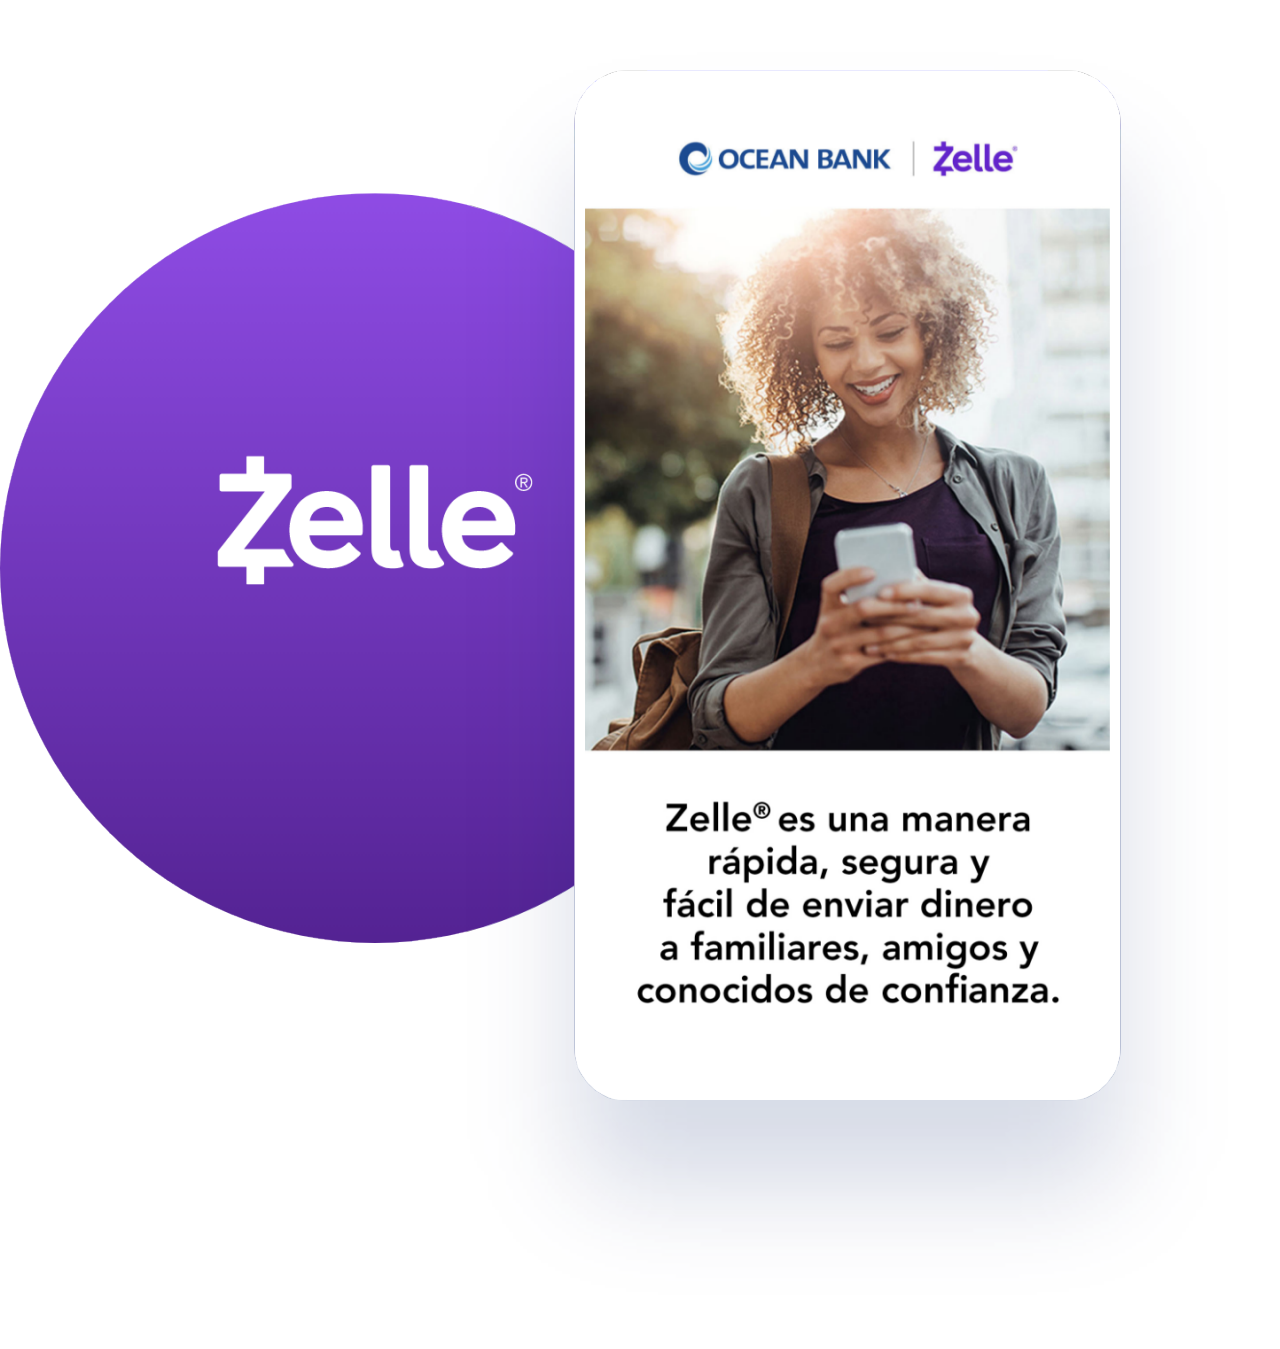 Zelle es una manera rápida, segura y fácil de enviar dinero a familiares, amigos y conocidos de confianza.